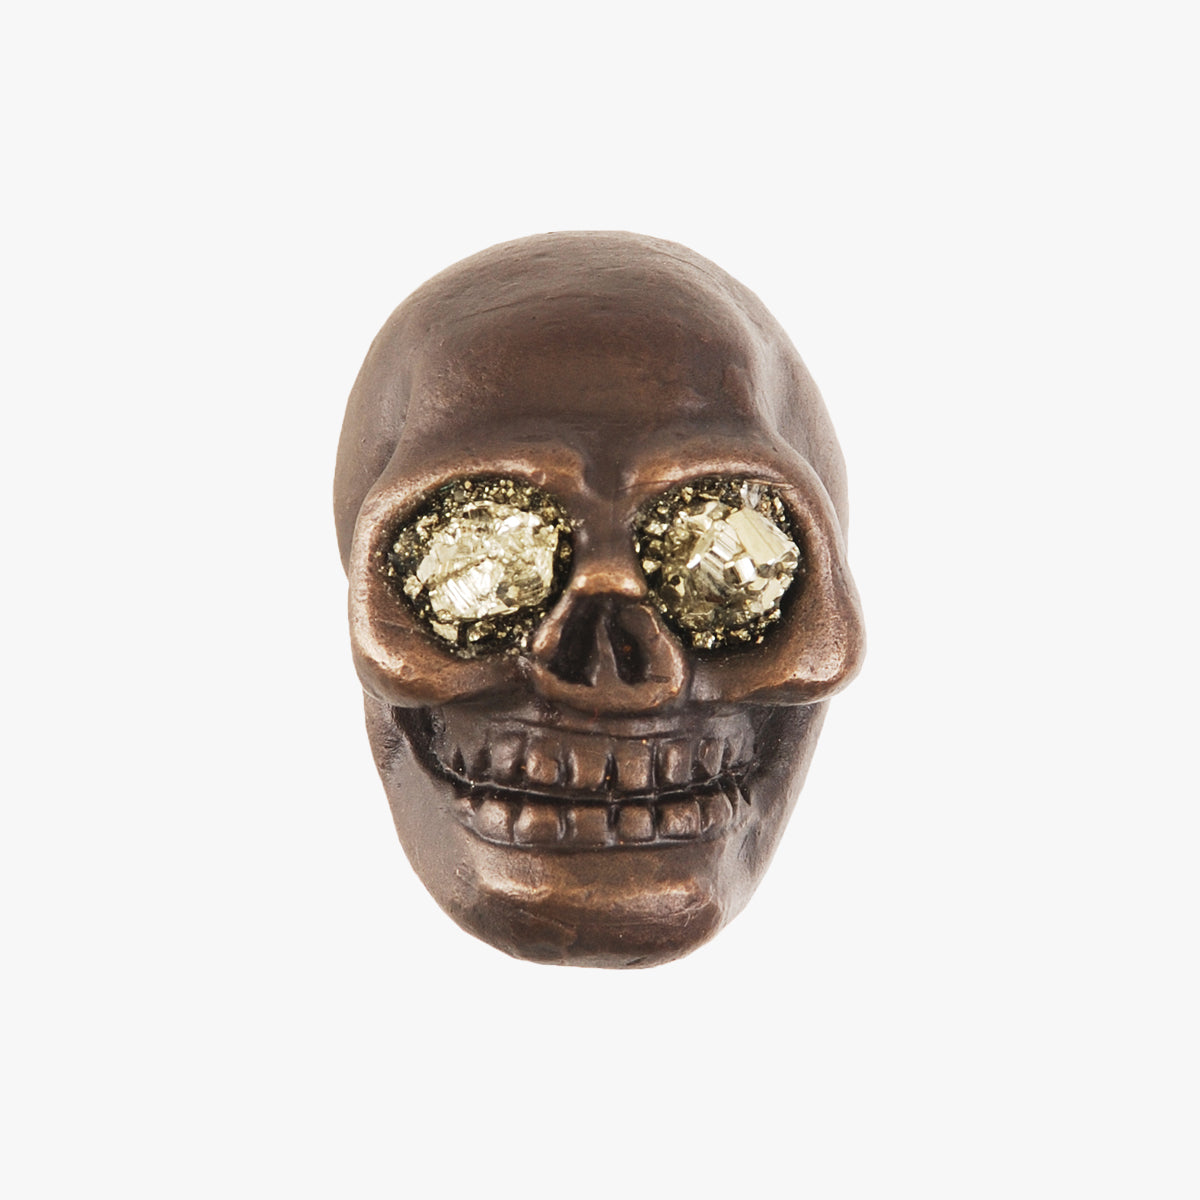 Skull knob handmade with pyrite stone and dark bronze by Matthew Studios